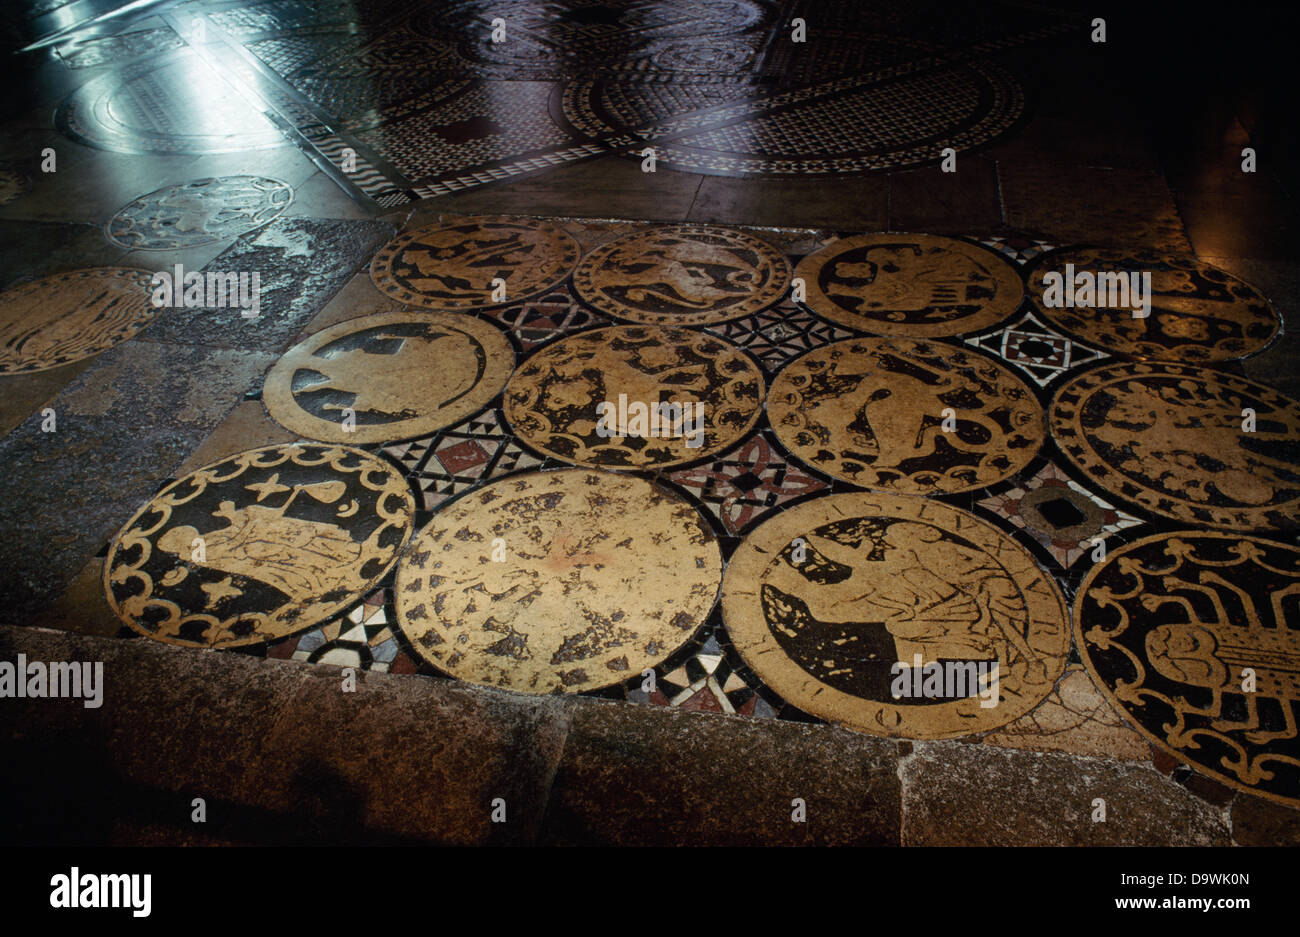 Sito di San Tommaso Becket il santuario, la Cattedrale di Canterbury. Dodici C13th roundels mostrano segni dello zodiaco, mesi/attività dell'anno, le virtù e i vizi. Foto Stock